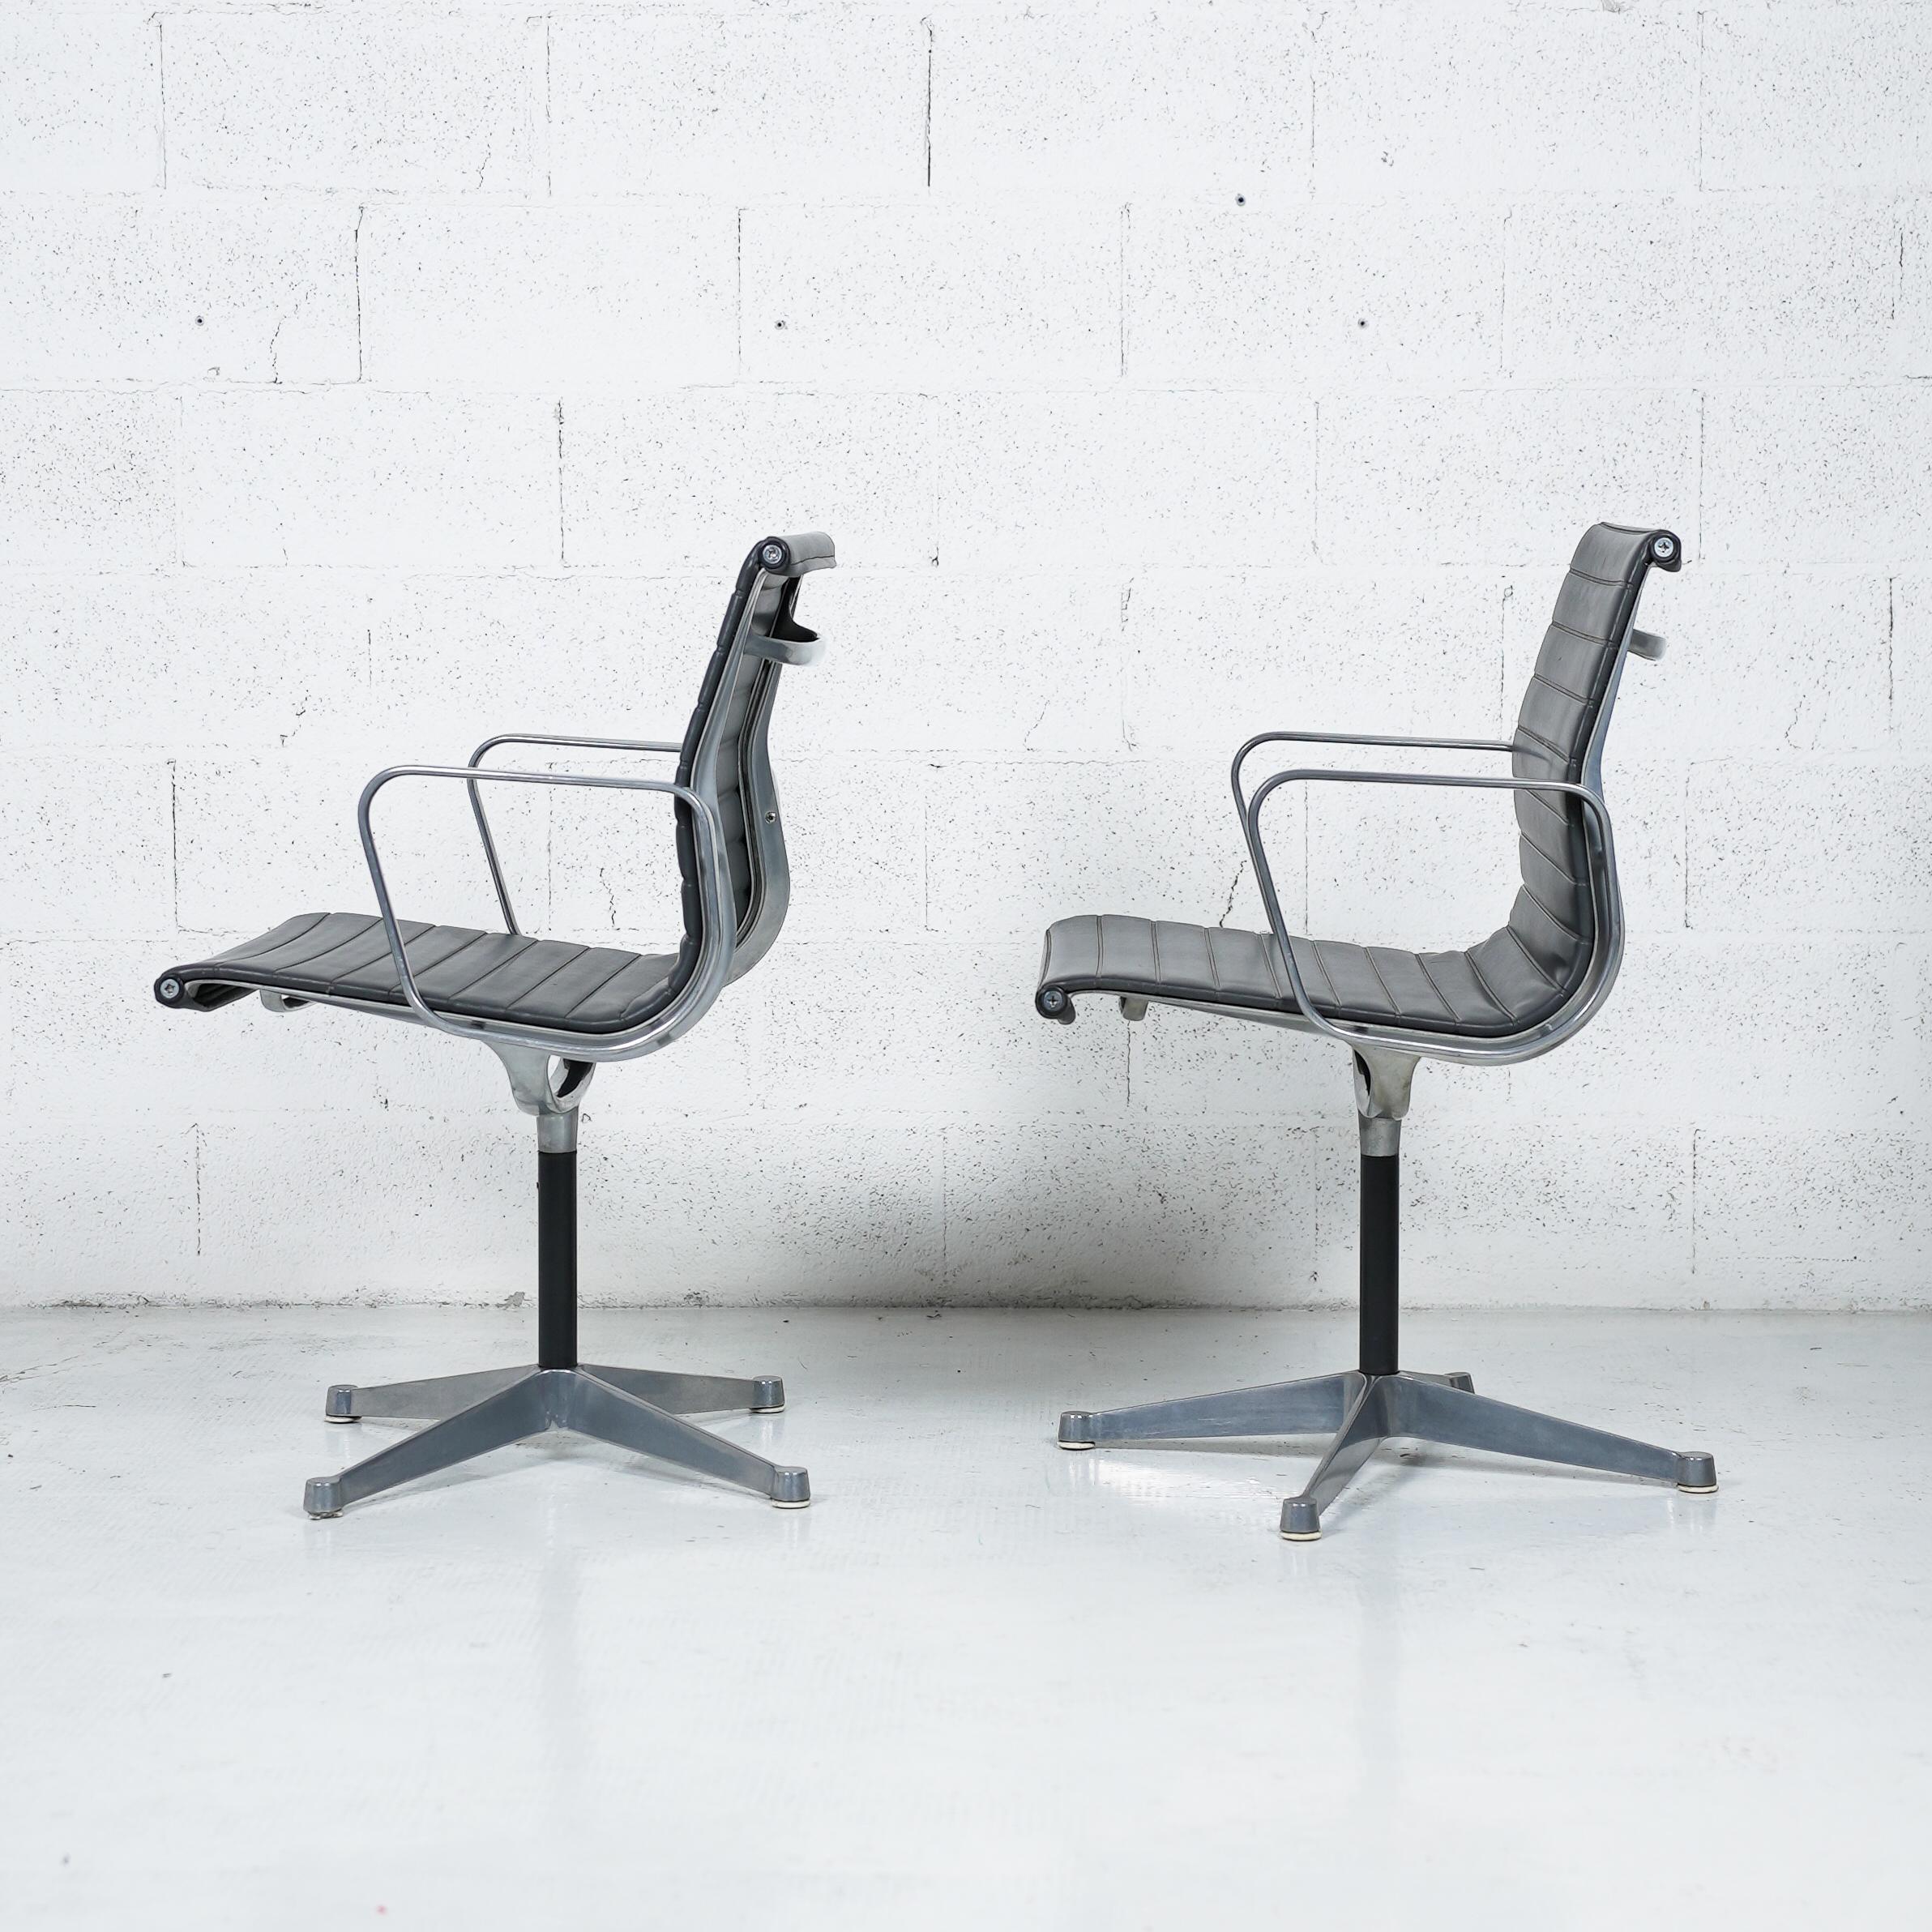 Jahrhunderts. Die Sitze der Aluminum Group-Serie wurden in den 1950er Jahren von Charles und Ray Eames entworfen und 1958 zum ersten Mal hergestellt und definieren bis heute den Standard für Konferenzstühle. Eine saubere und sichtbare Struktur, die